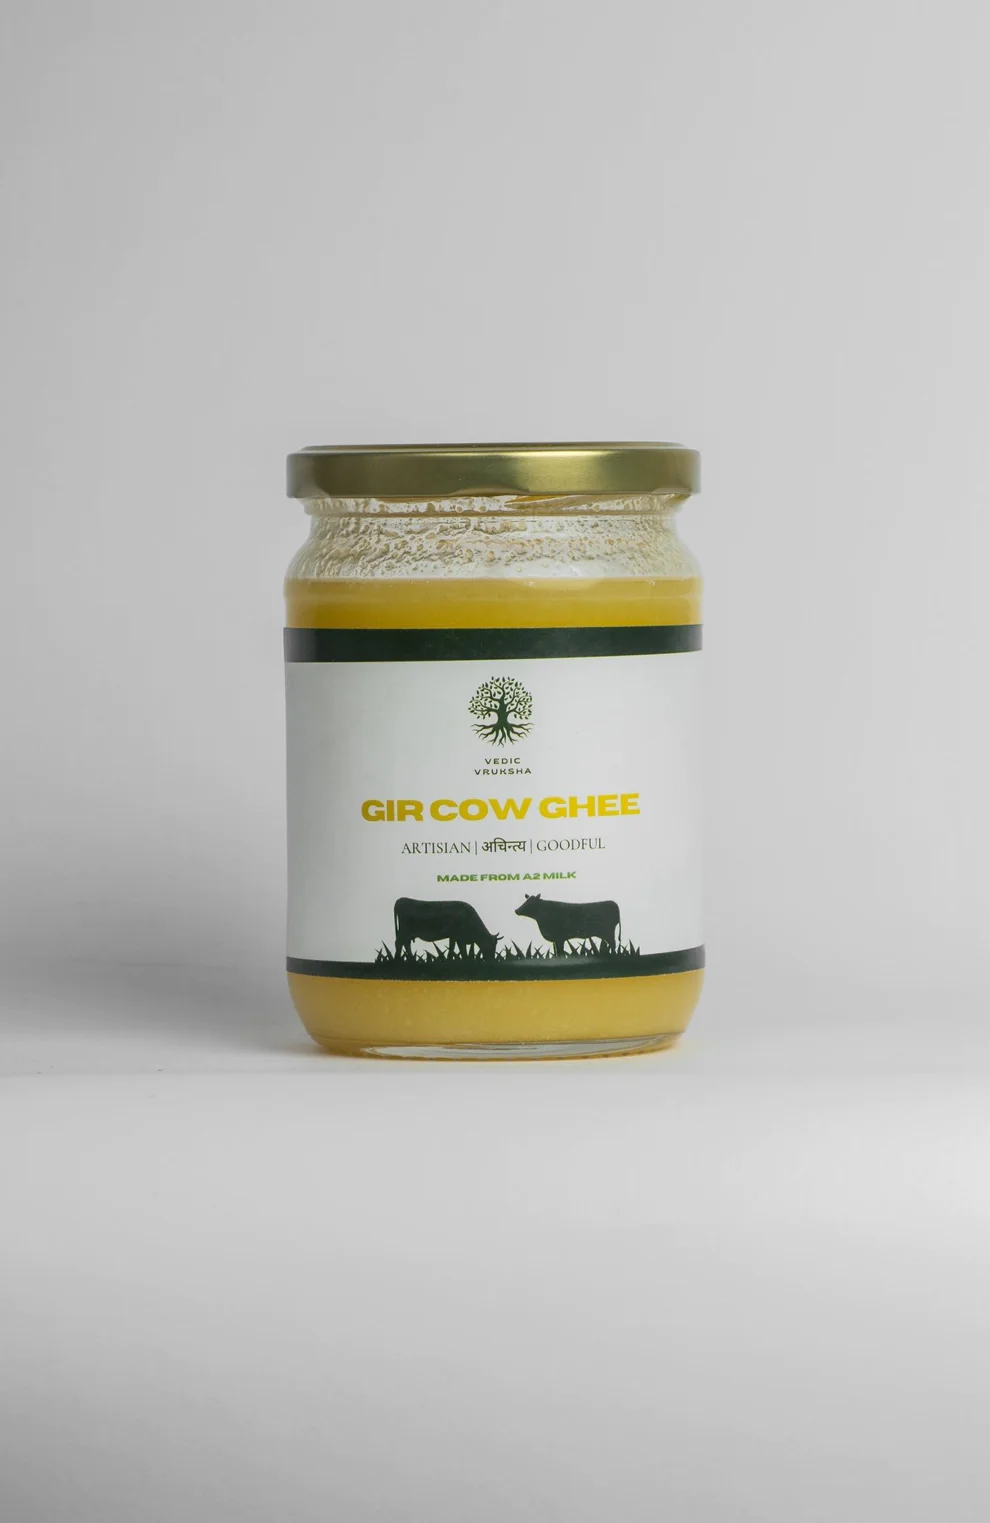 Greenseed Organics A2 Gir Cow Ghee